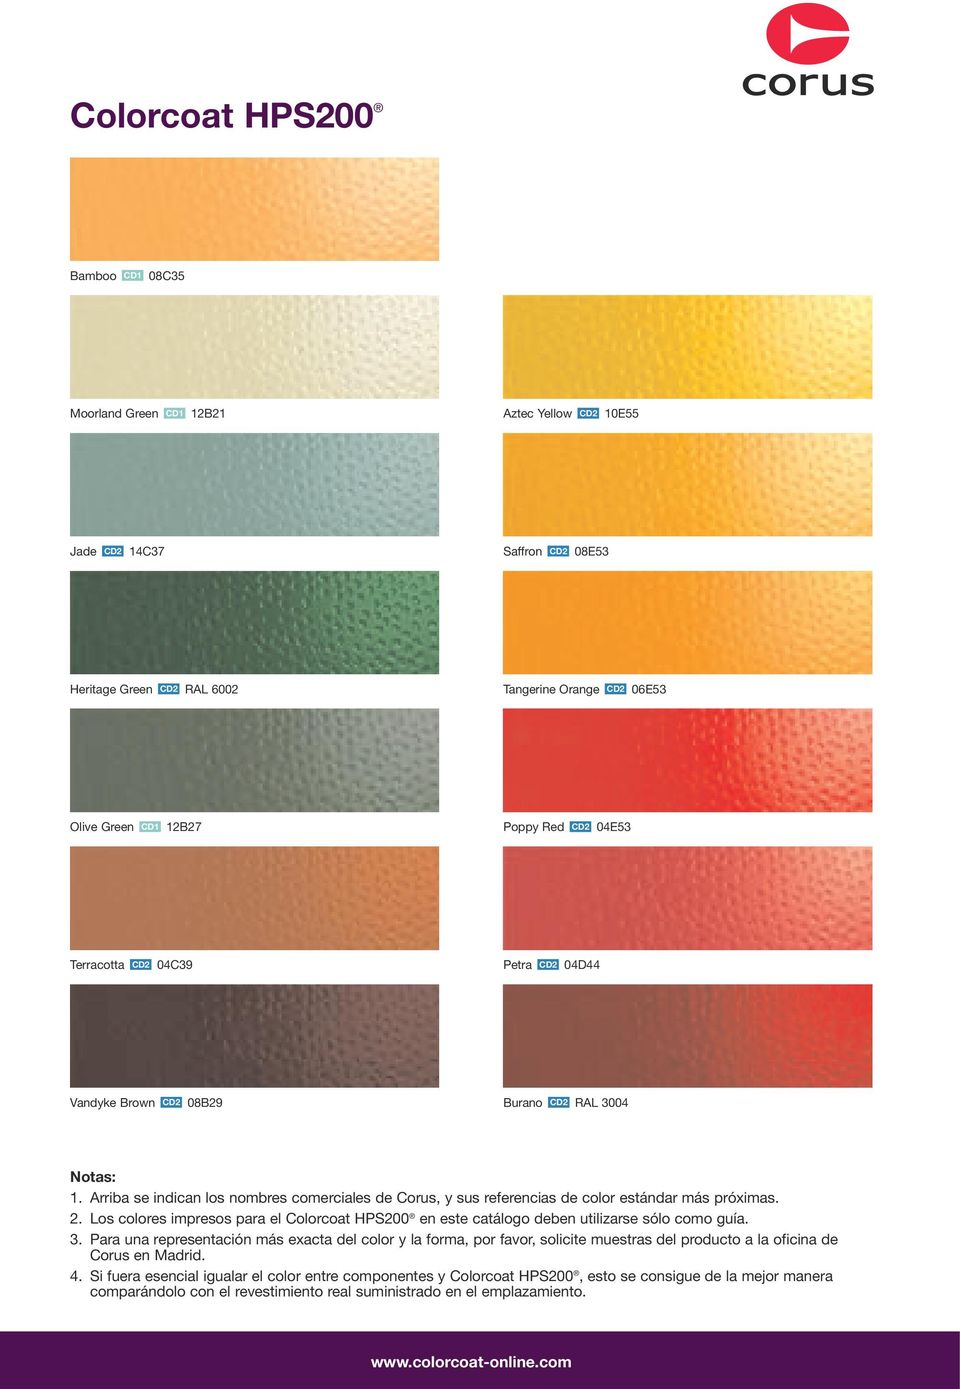 Los colores impresos para el Colorcoat HPS200 en este catálogo deben utilizarse sólo como guía. 3.